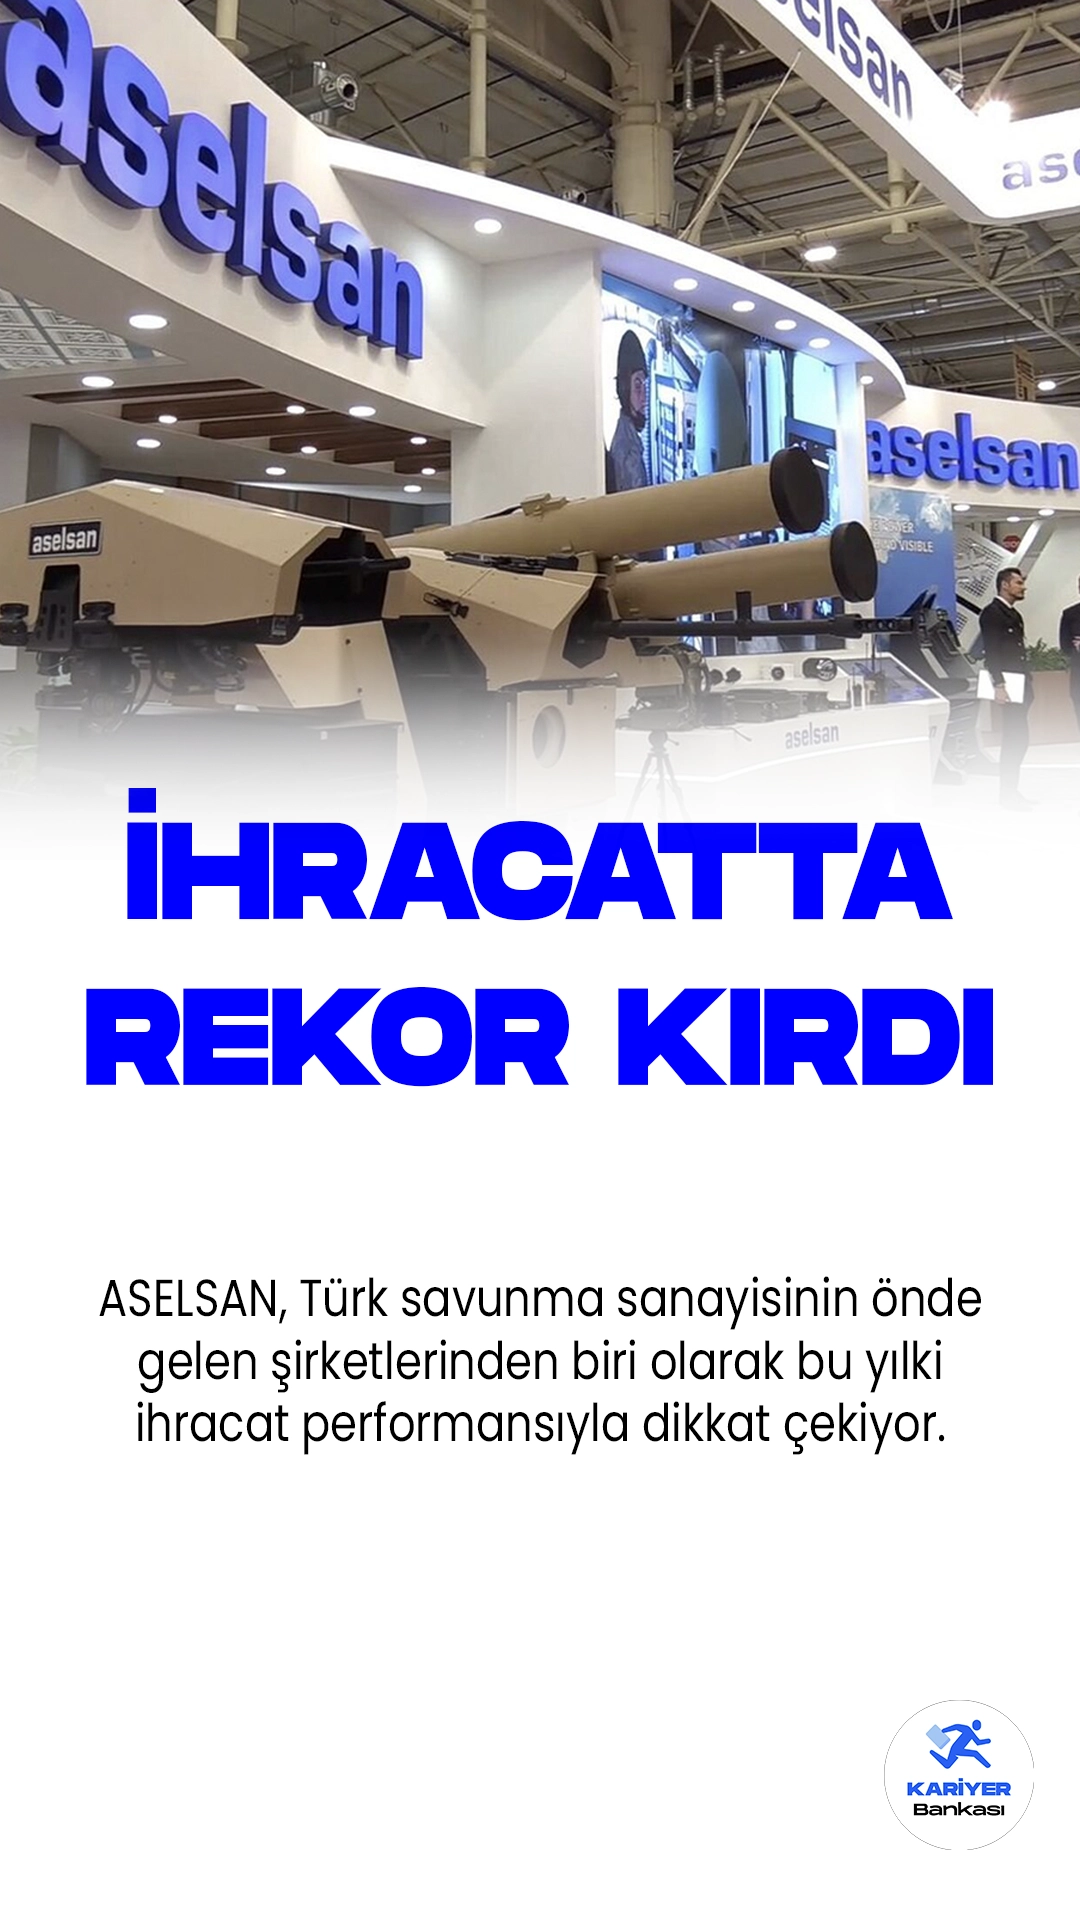 ASELSAN İhracatı Artırıyor: 2023 Yılında Rekor Performans!ASELSAN, Türk savunma sanayisinin önde gelen şirketlerinden biri olarak bu yılki ihracat performansıyla dikkat çekiyor. ASELSAN Genel Müdürü Ahmet Akyol, "İhracat rakamlarında, yeni imzaladığımız sözleşmelerde geçen yılın tamamını ilk yarıda yakalamış durumdayız. Artırarak devam ettireceğiz bunu" şeklinde konuştu.